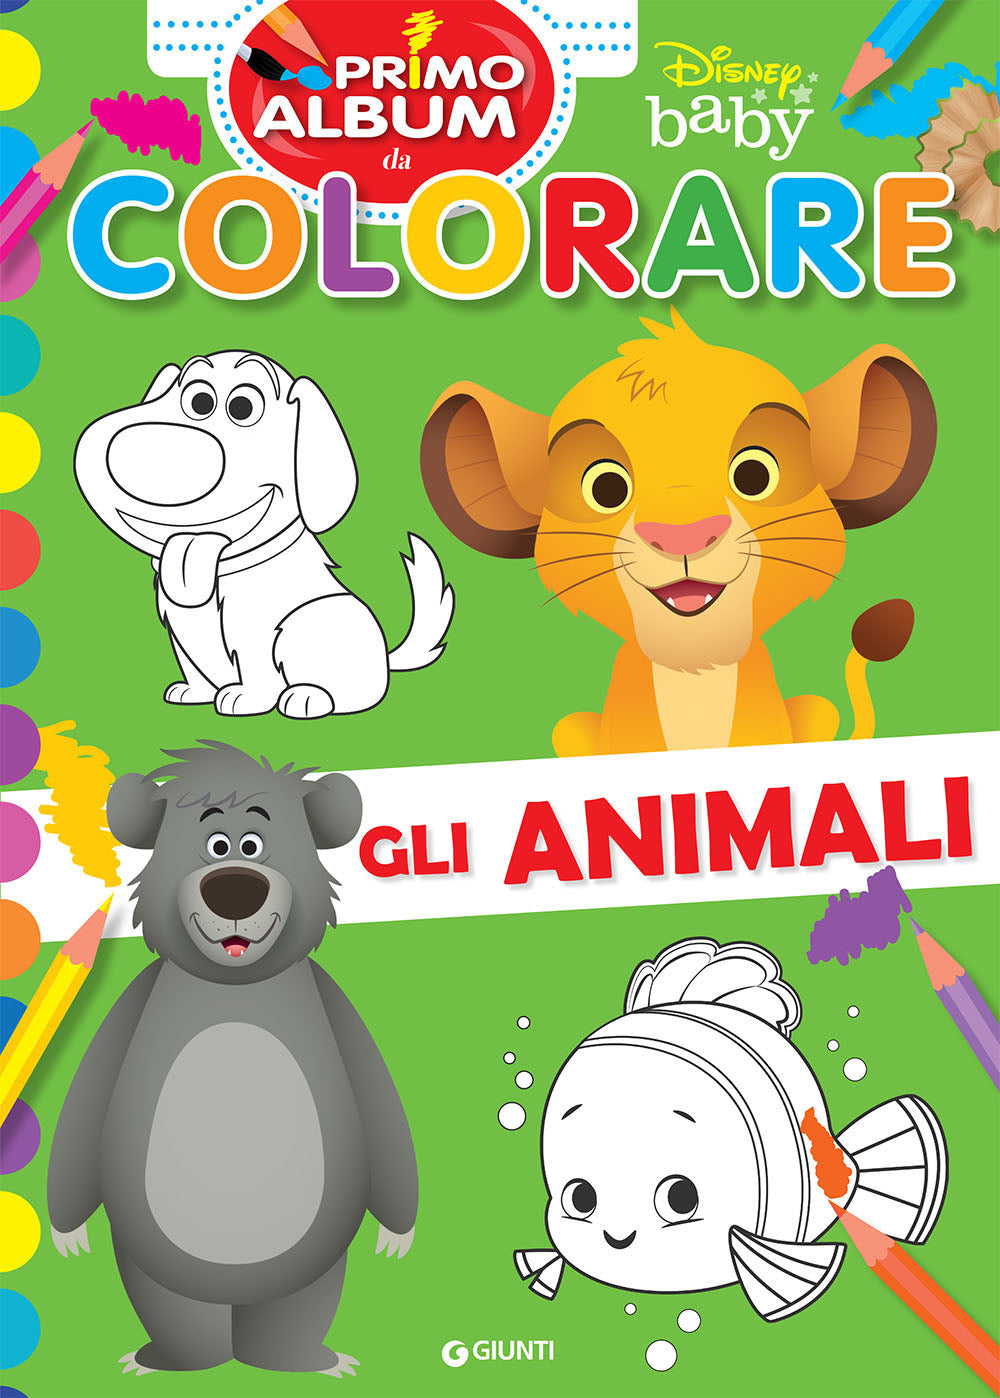 Disney Baby - Primo album da colorare - Gli animali: libro di Walt Disney